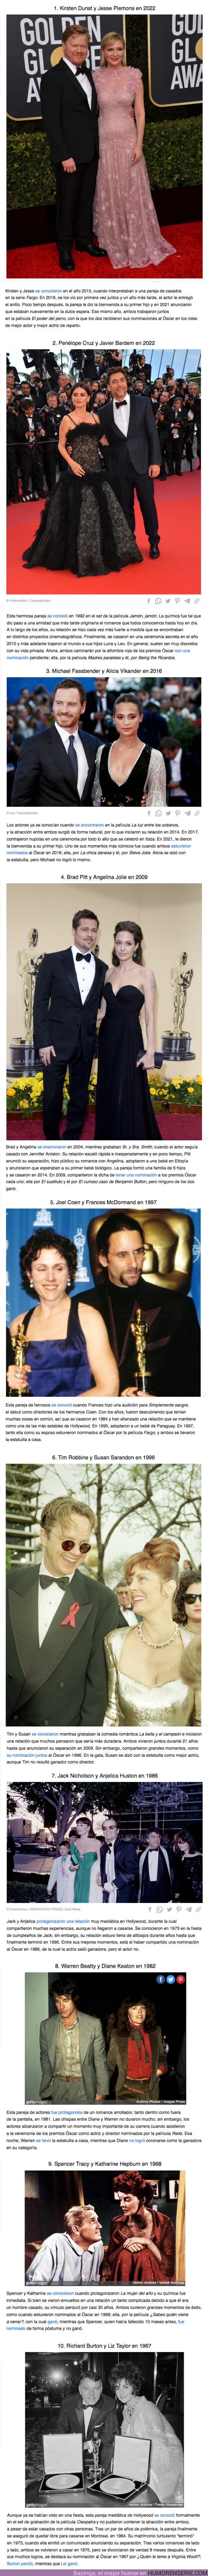 92031 - GALERÍA: 10 Parejas reales de actores que hicieron historia al estar nominados al Óscar en el mismo año